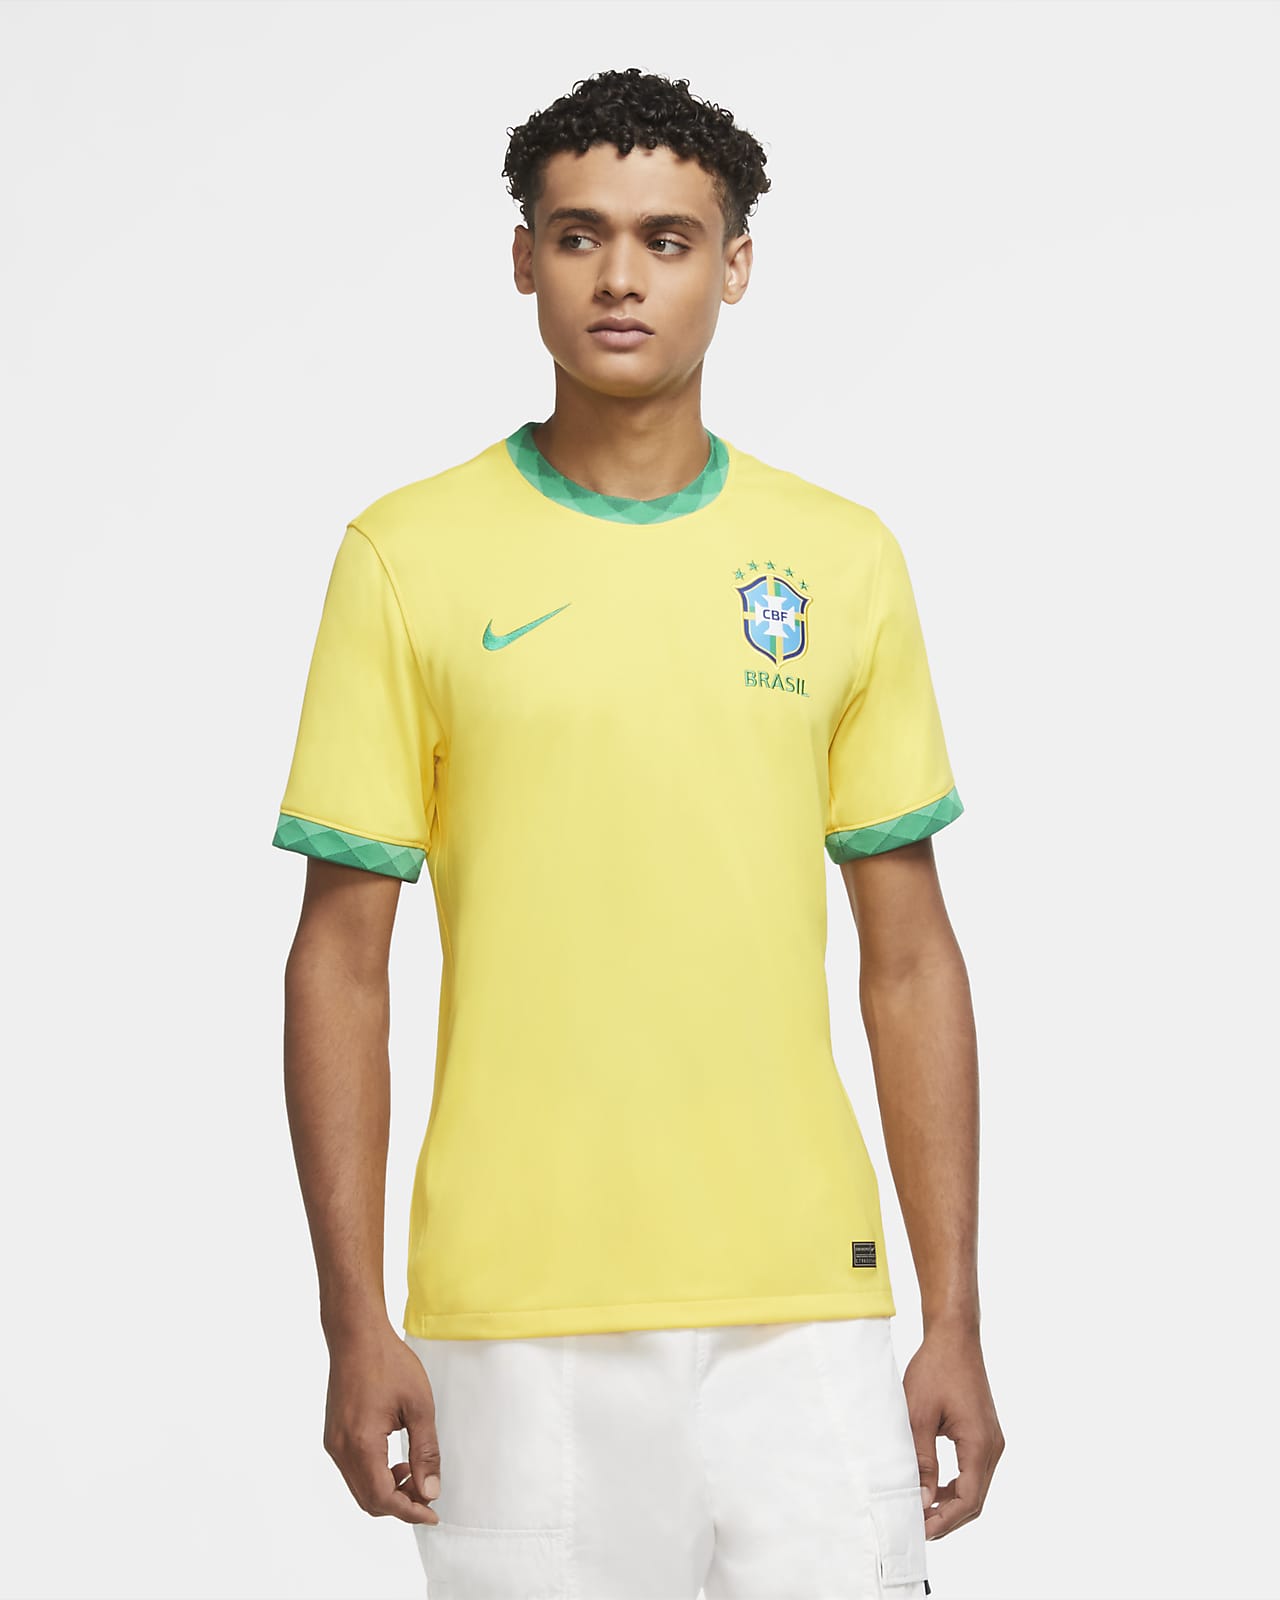 Nike公式 ブラジル スタジアム ホーム メンズ サッカーユニフォーム オンラインストア 通販サイト